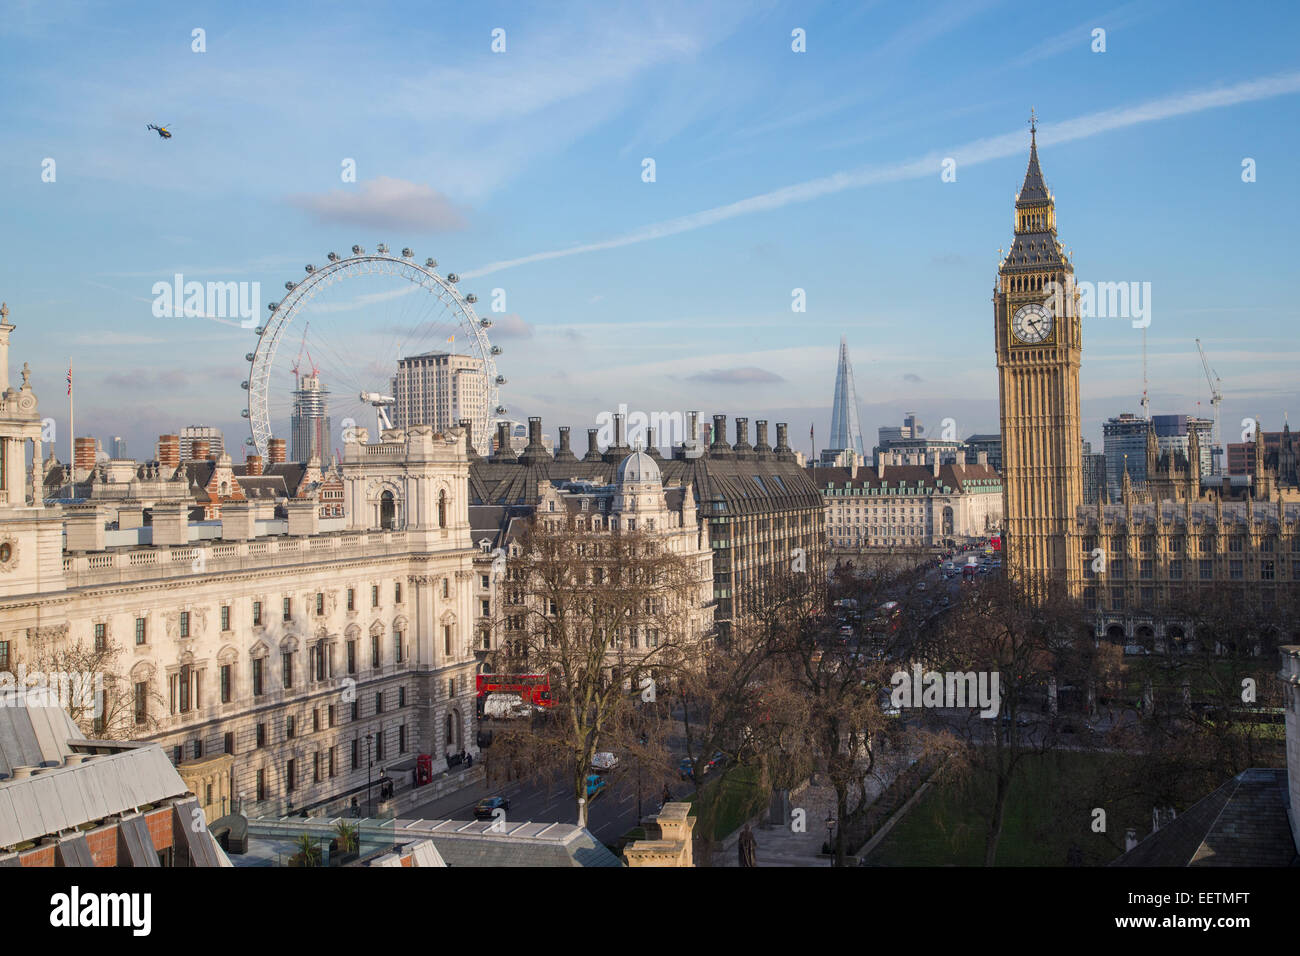 Vista de la Plaza del Parlamento mirando al sur, con el Big Ben, el London Eye y el Shard Foto de stock